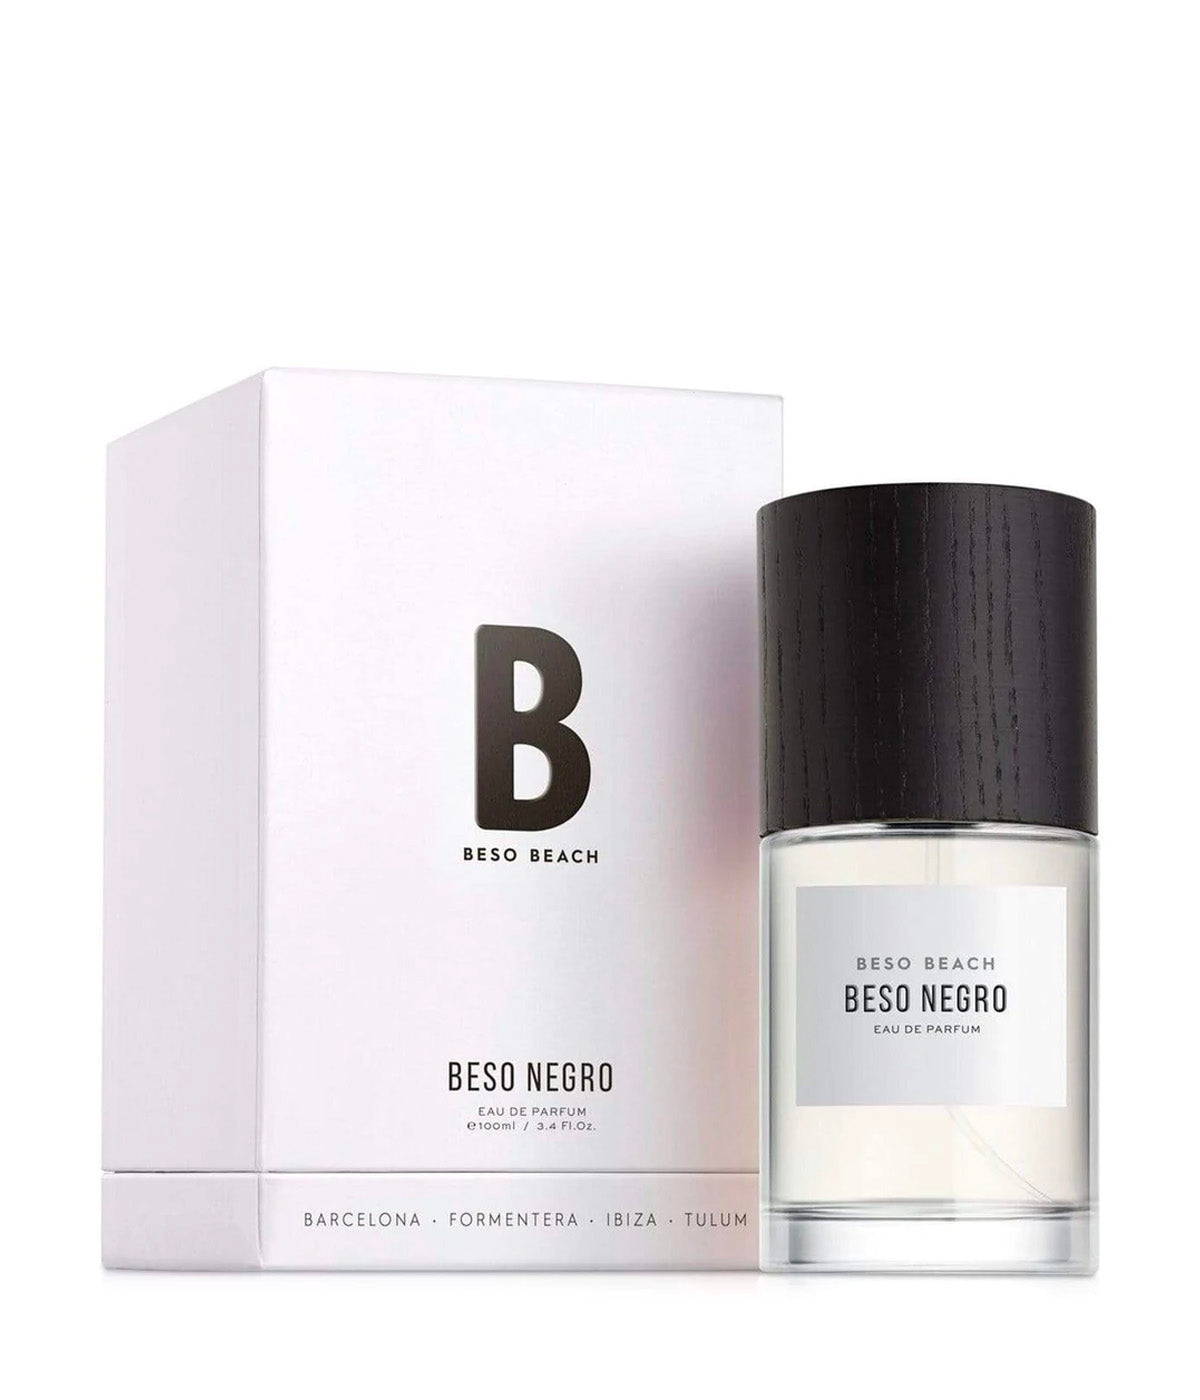 Beso Beach Negro Perfume